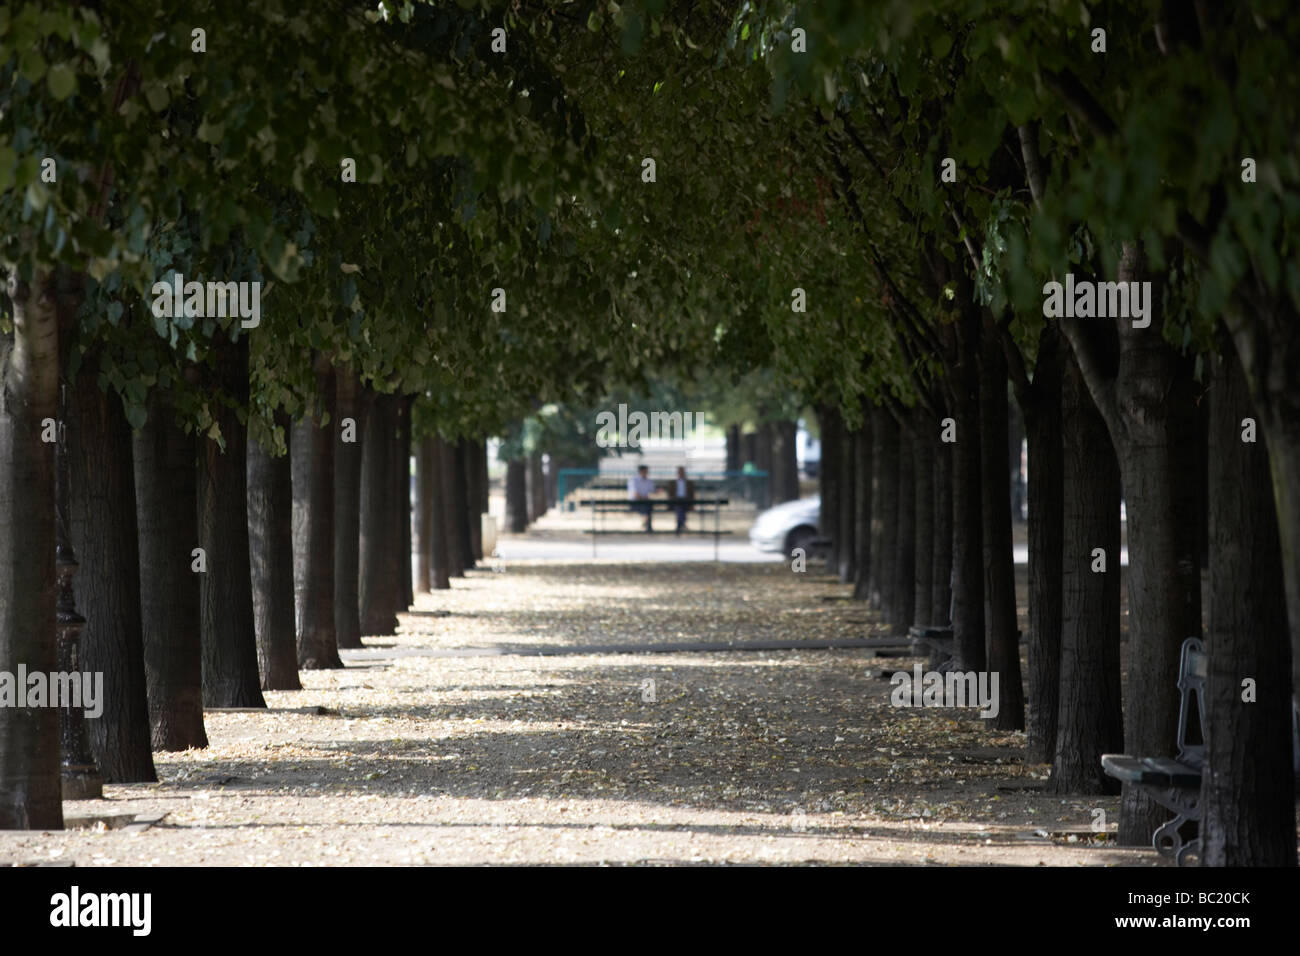 Boulevard bordé d'arbres,Paris,France Banque D'Images